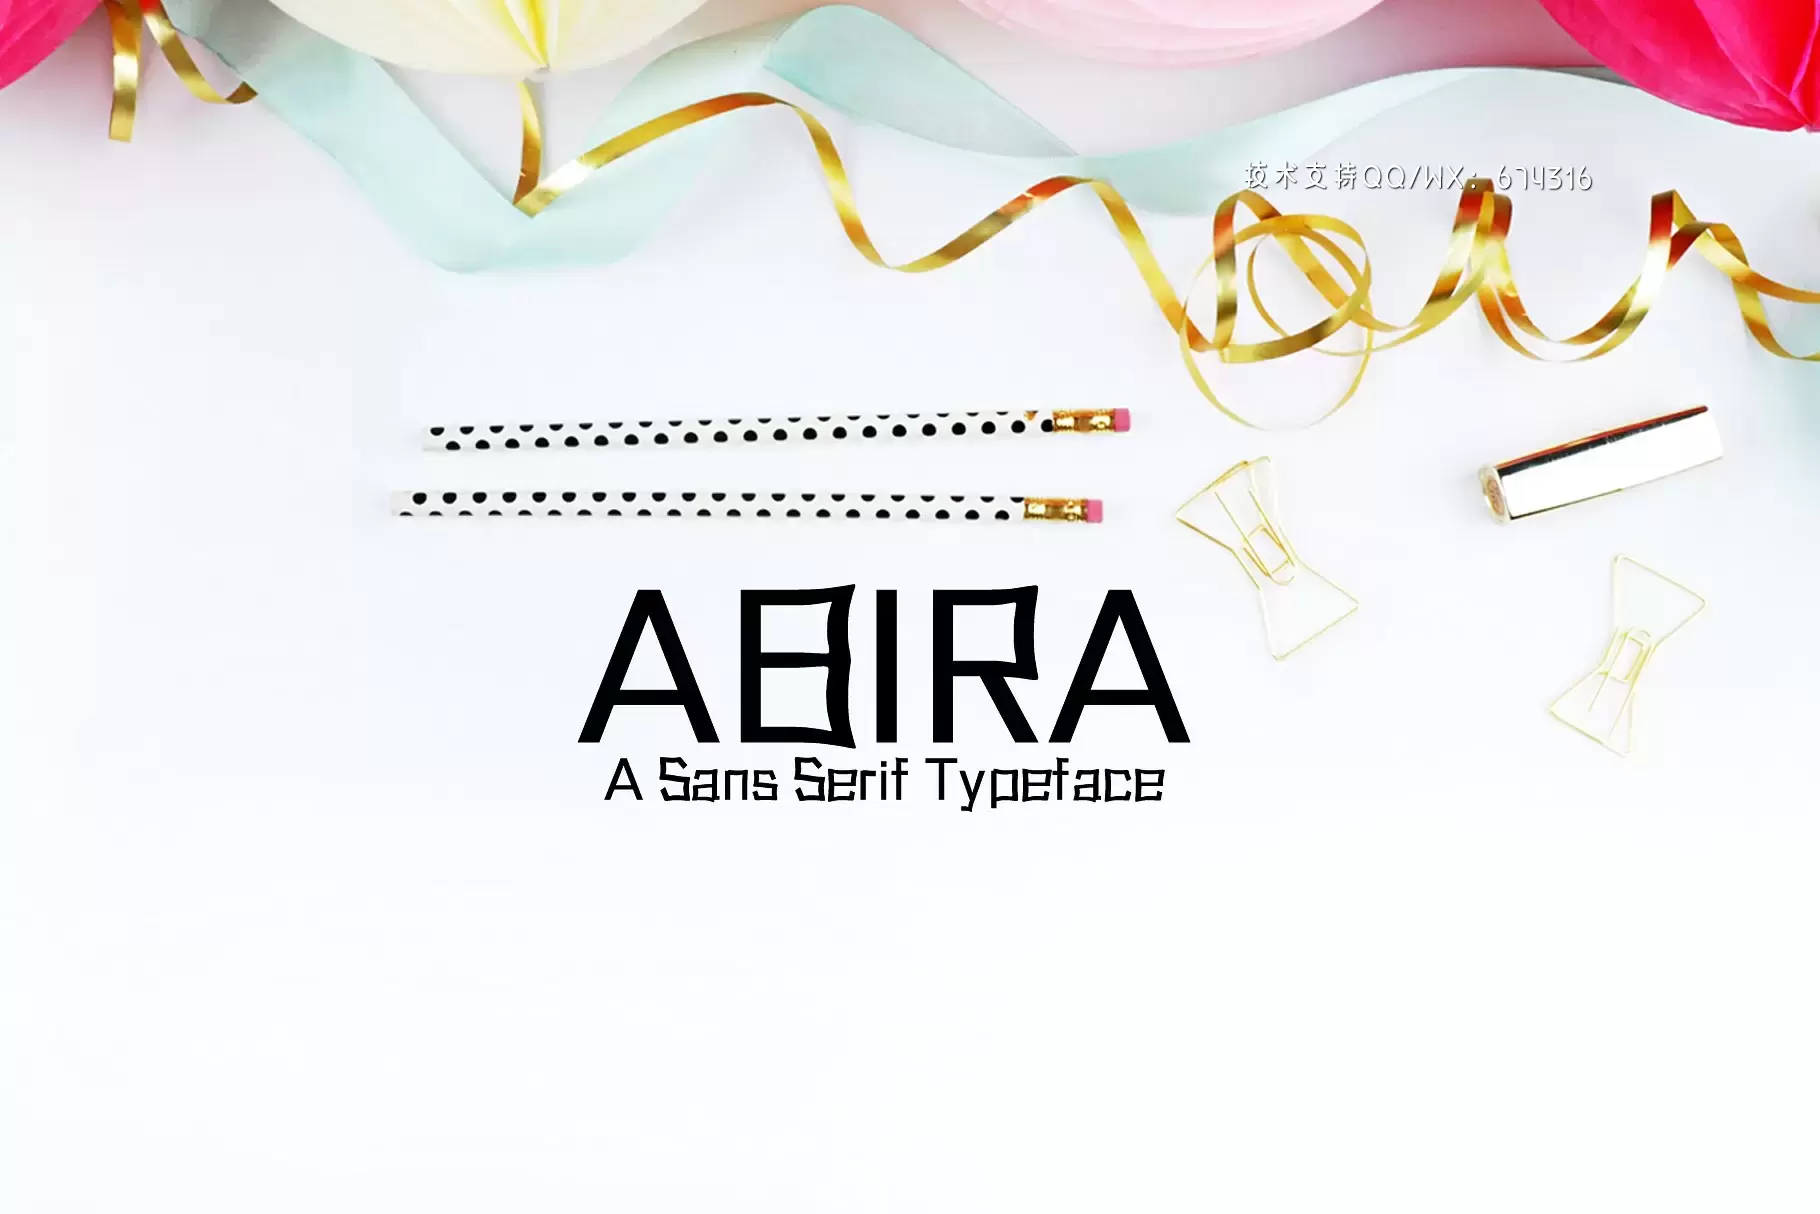 个性设计字体 Abira Sans Serif 6 Font Family Pack免费下载